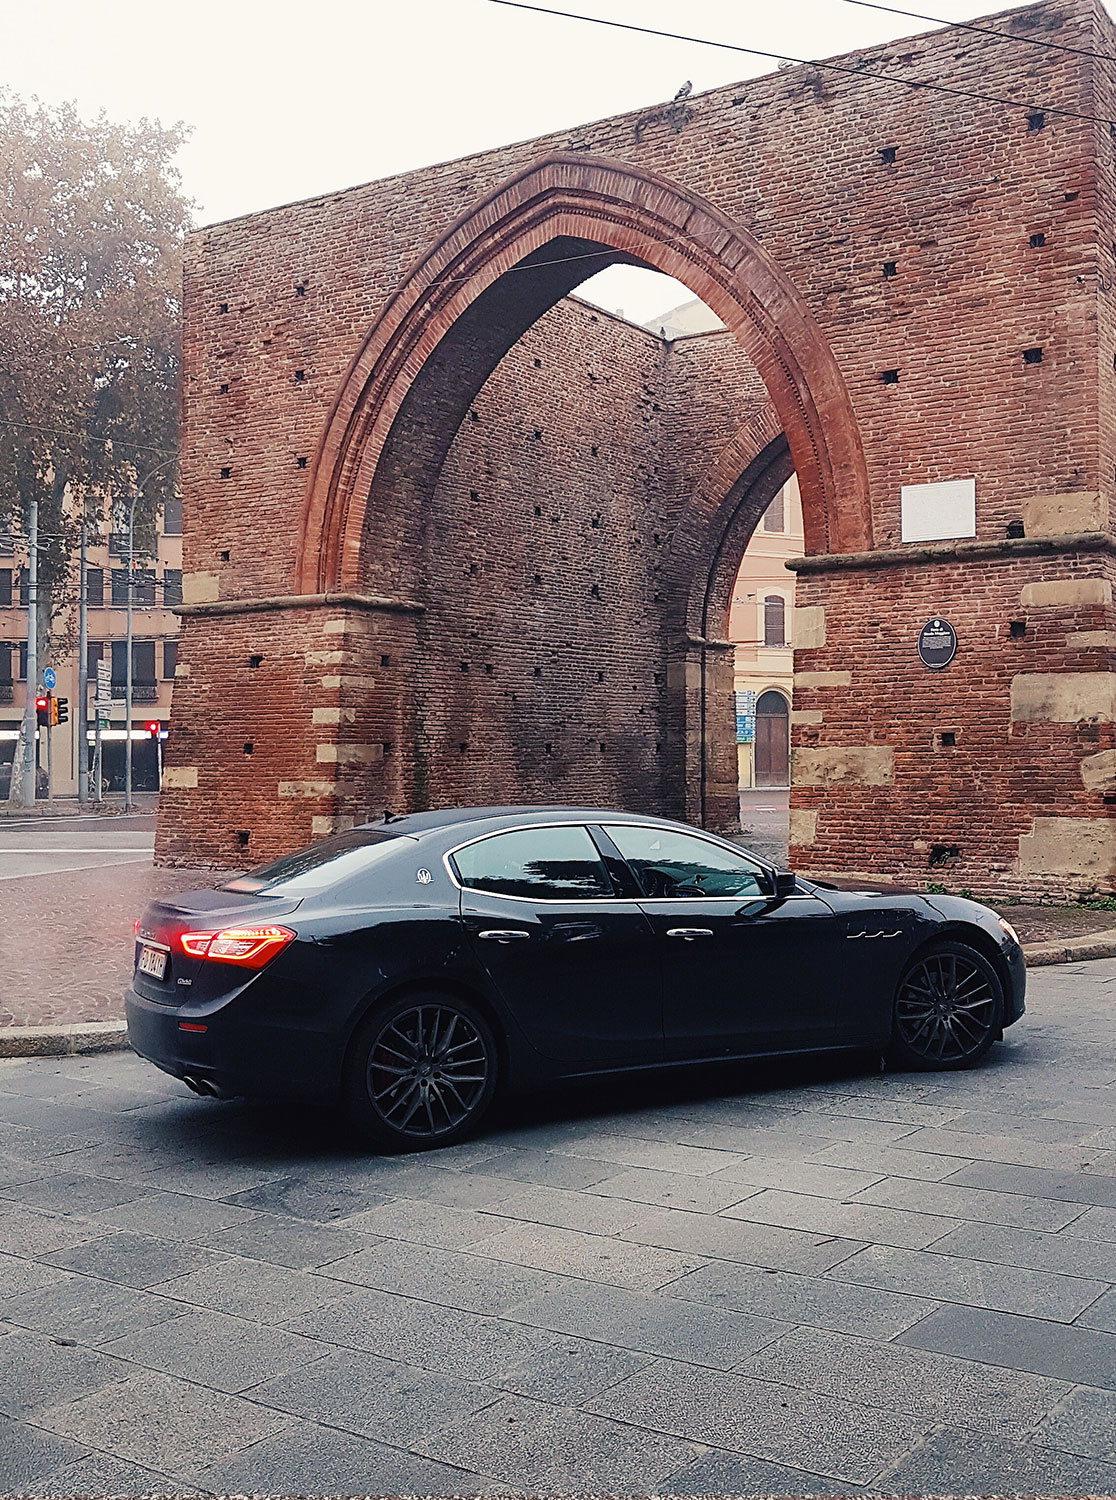 O-One-Project-Maserati-Escape-From-The-City-Cassero-stra-maggiore-Bologna.jpg